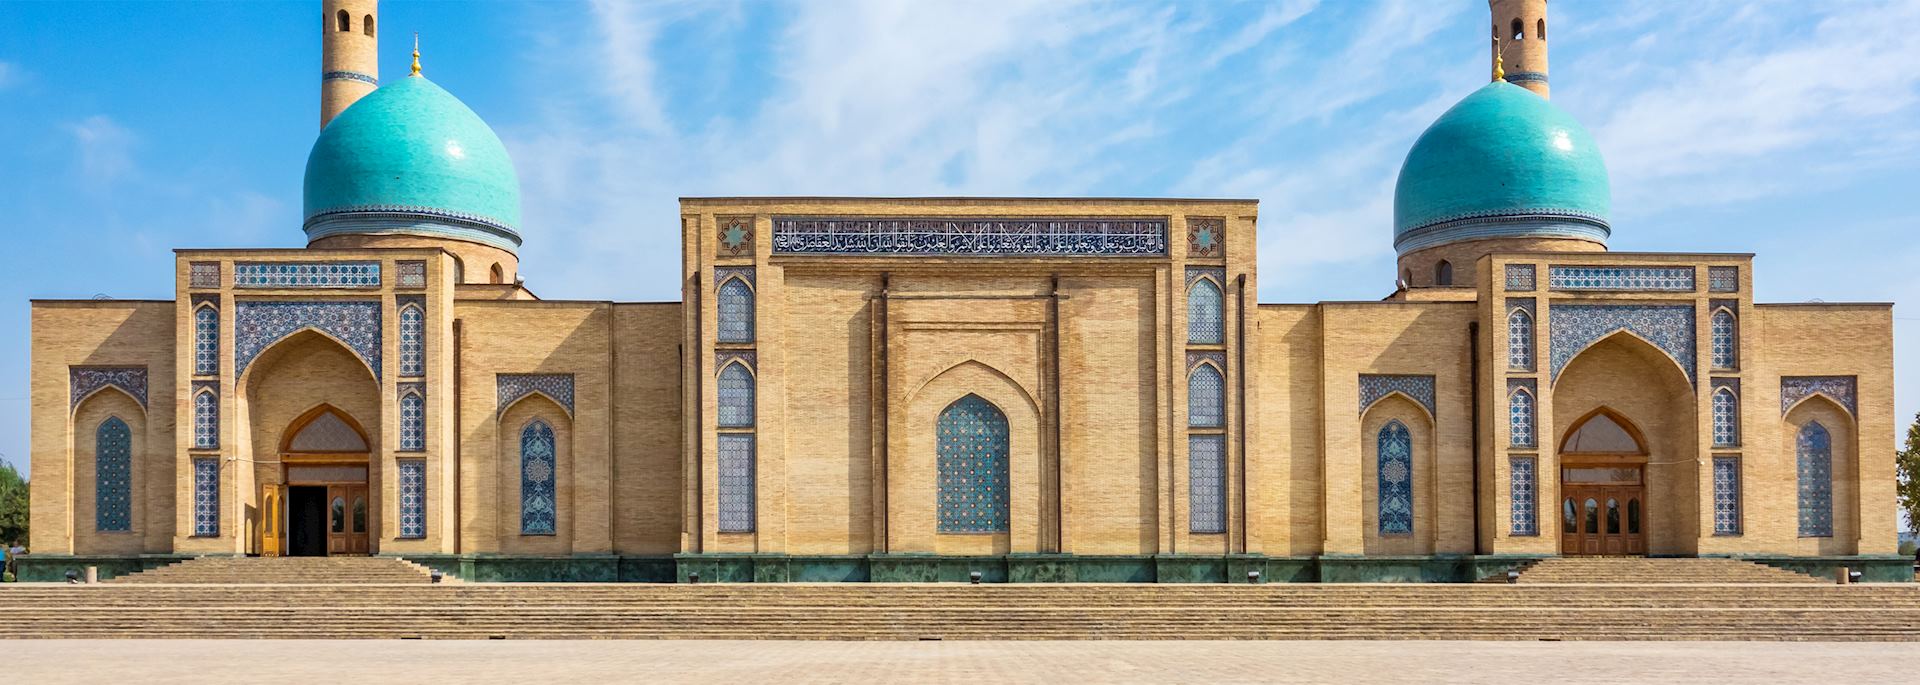 Hazrat Imam Mosque, Tashkent